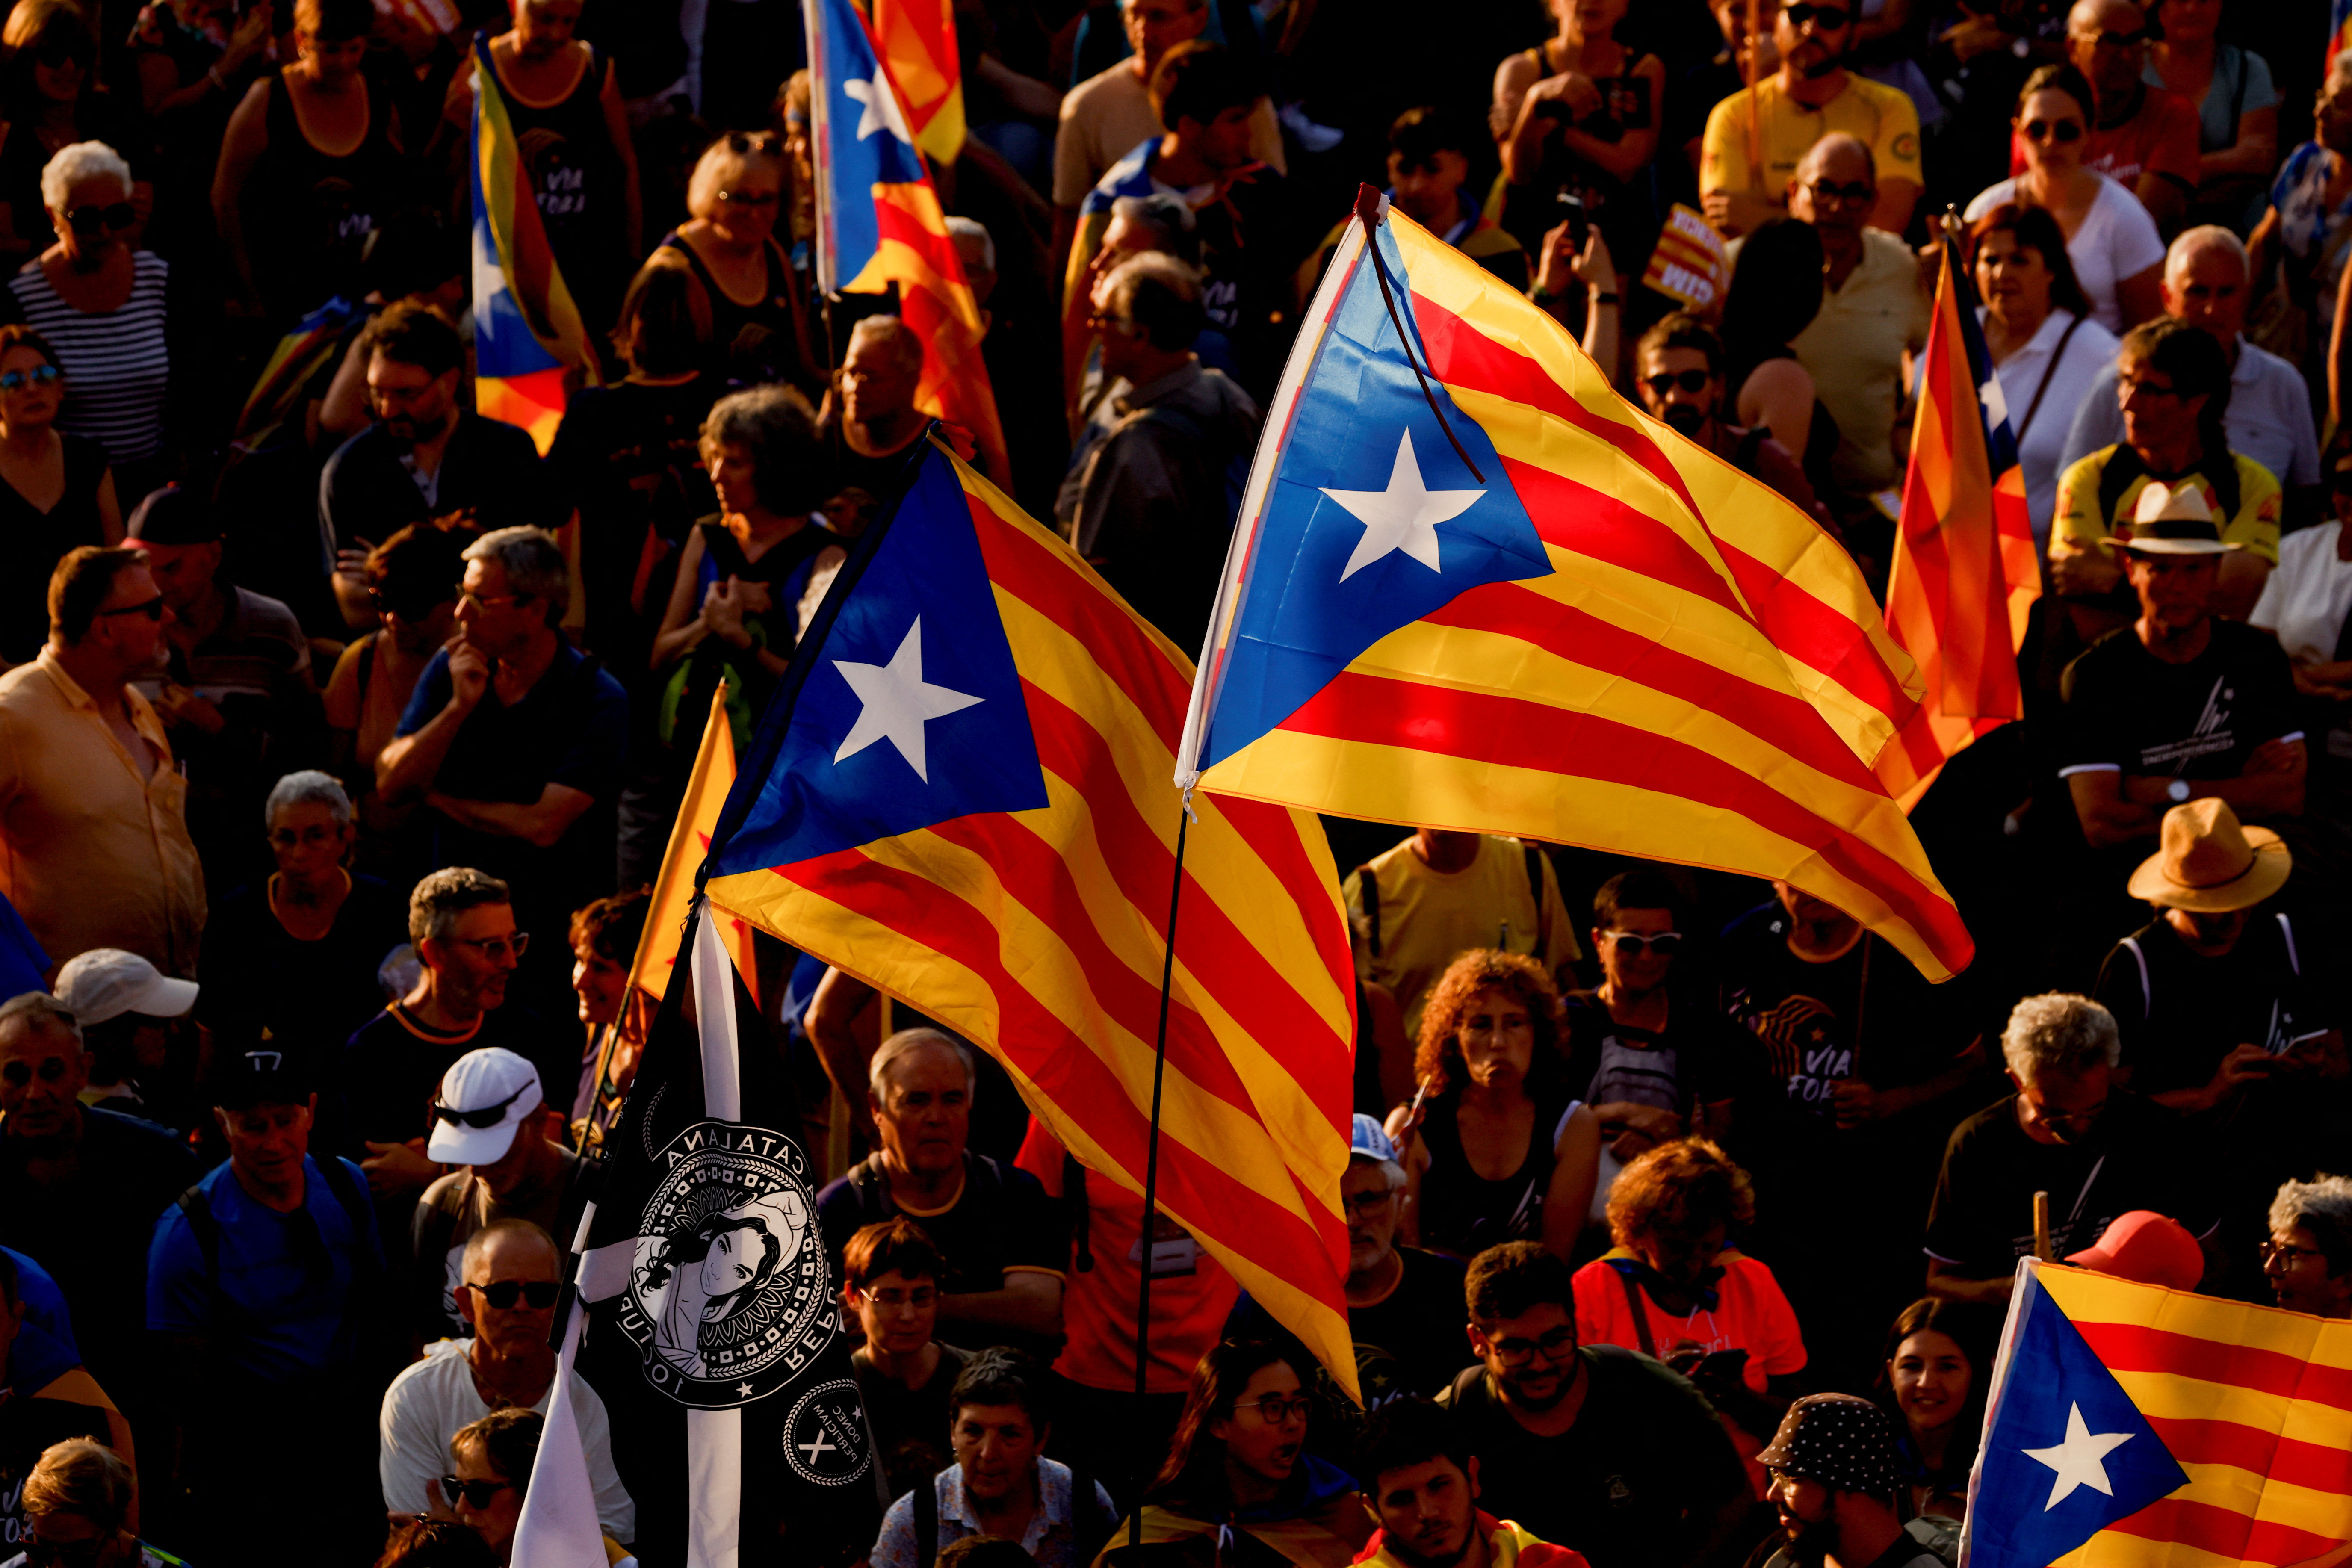 Spain vs Catalonia, Catalonia vs Spain, Spain, Catalonia, Comparison